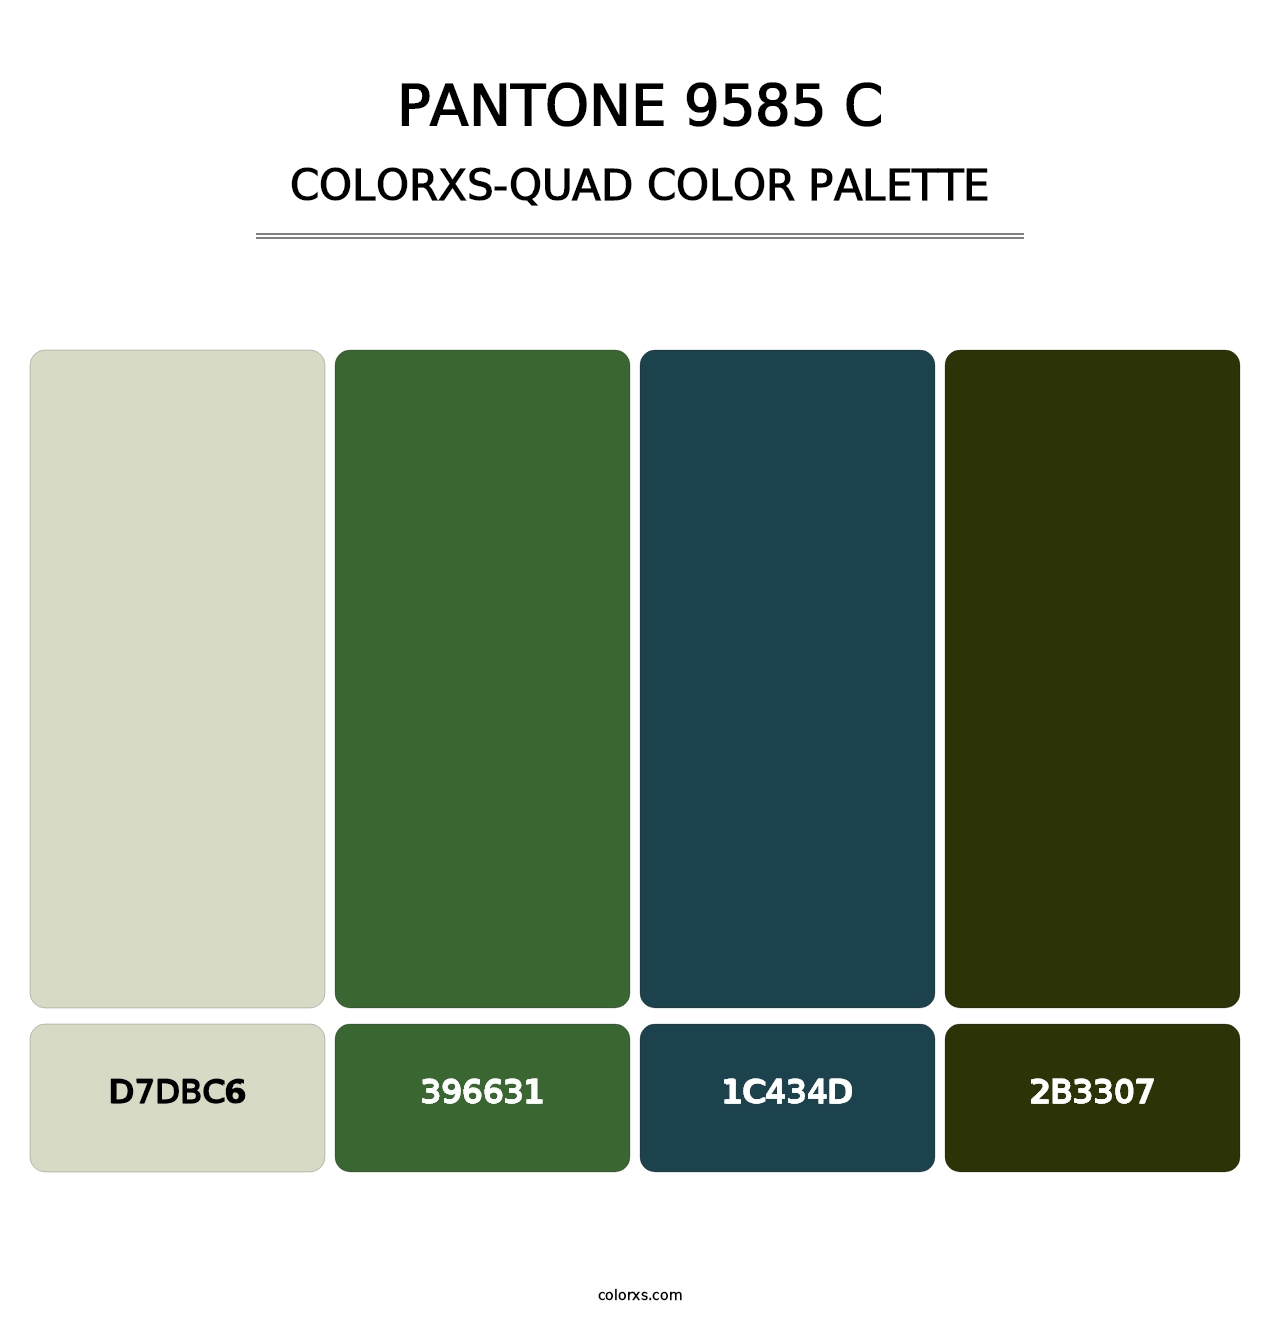 PANTONE 9585 C - Colorxs Quad Palette